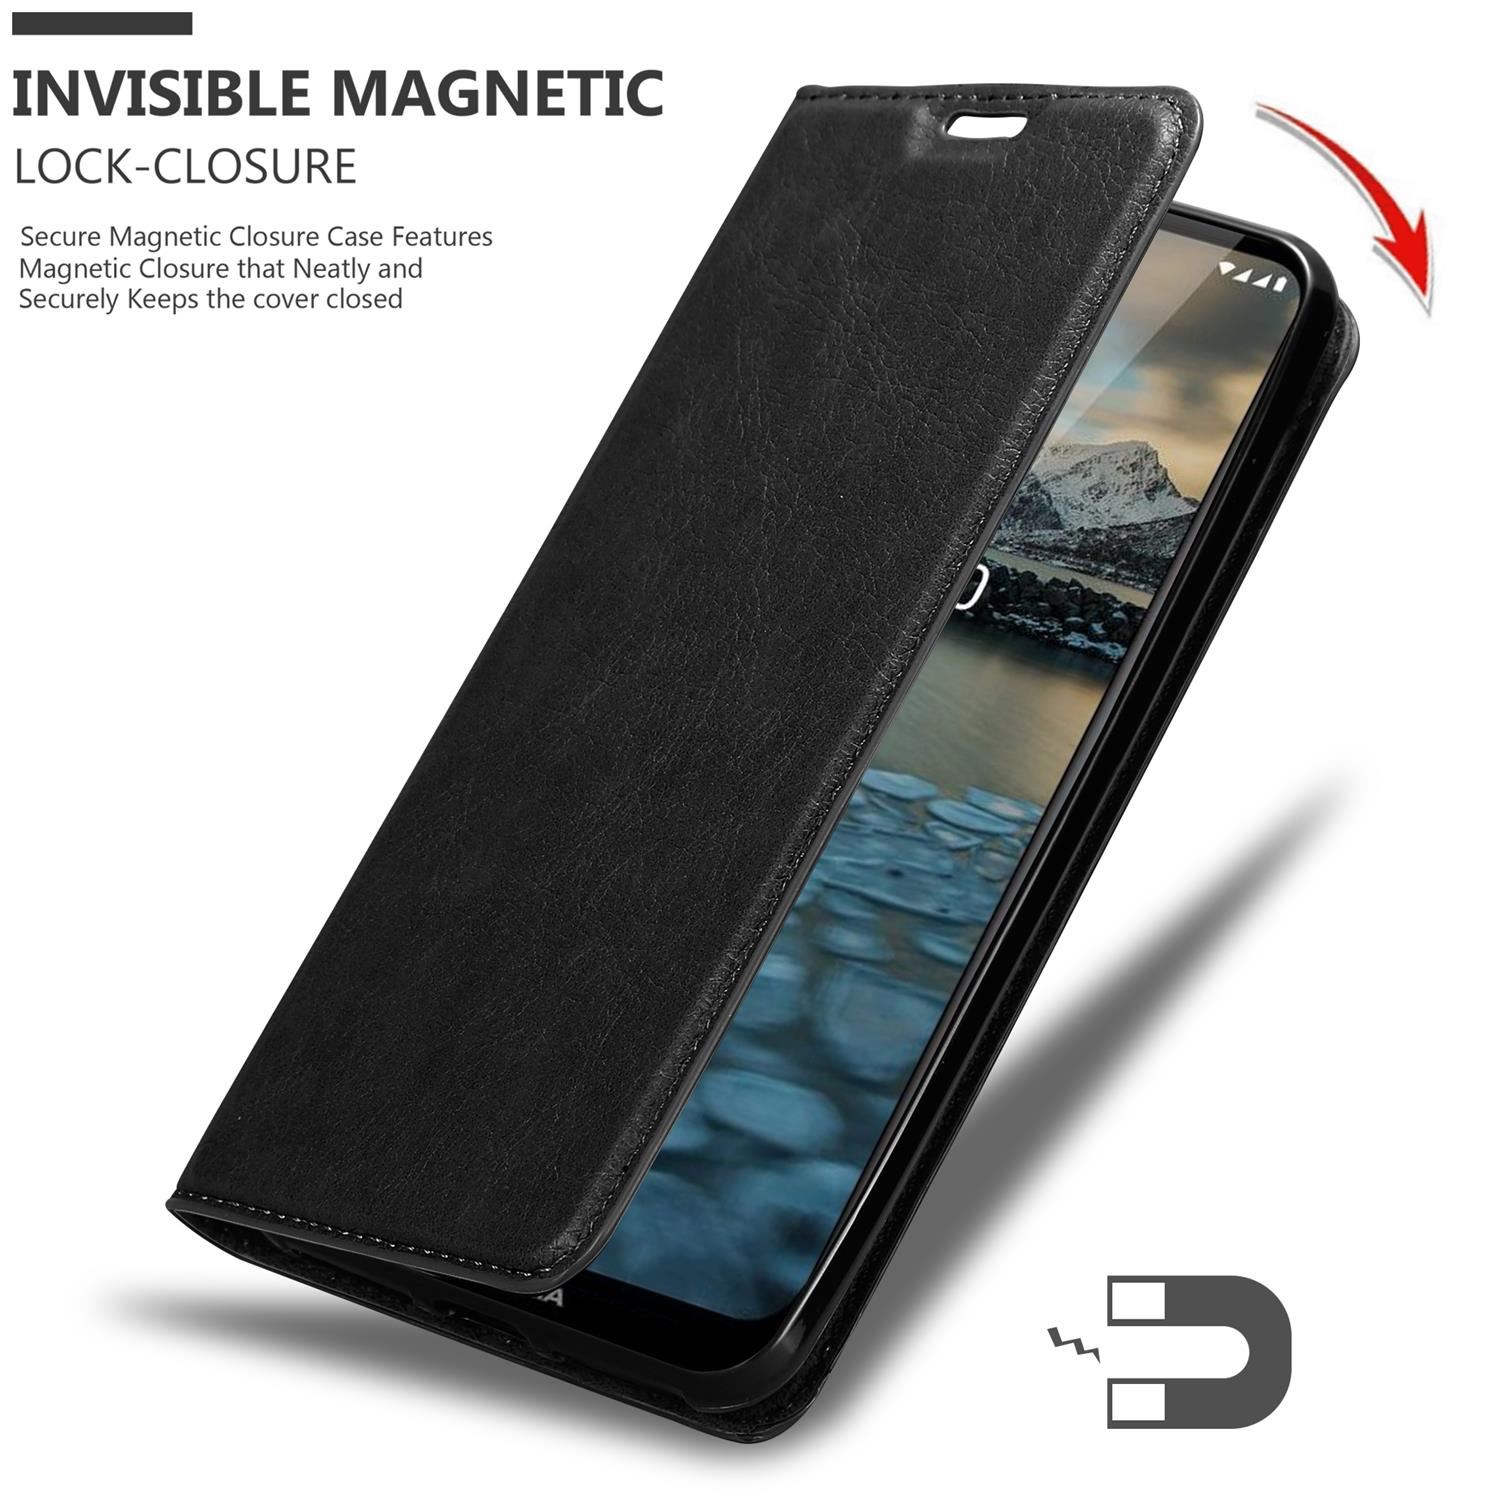 Hülle Invisible Magnet, Book SCHWARZ Bookcover, NACHT Nokia, 2.4, CADORABO